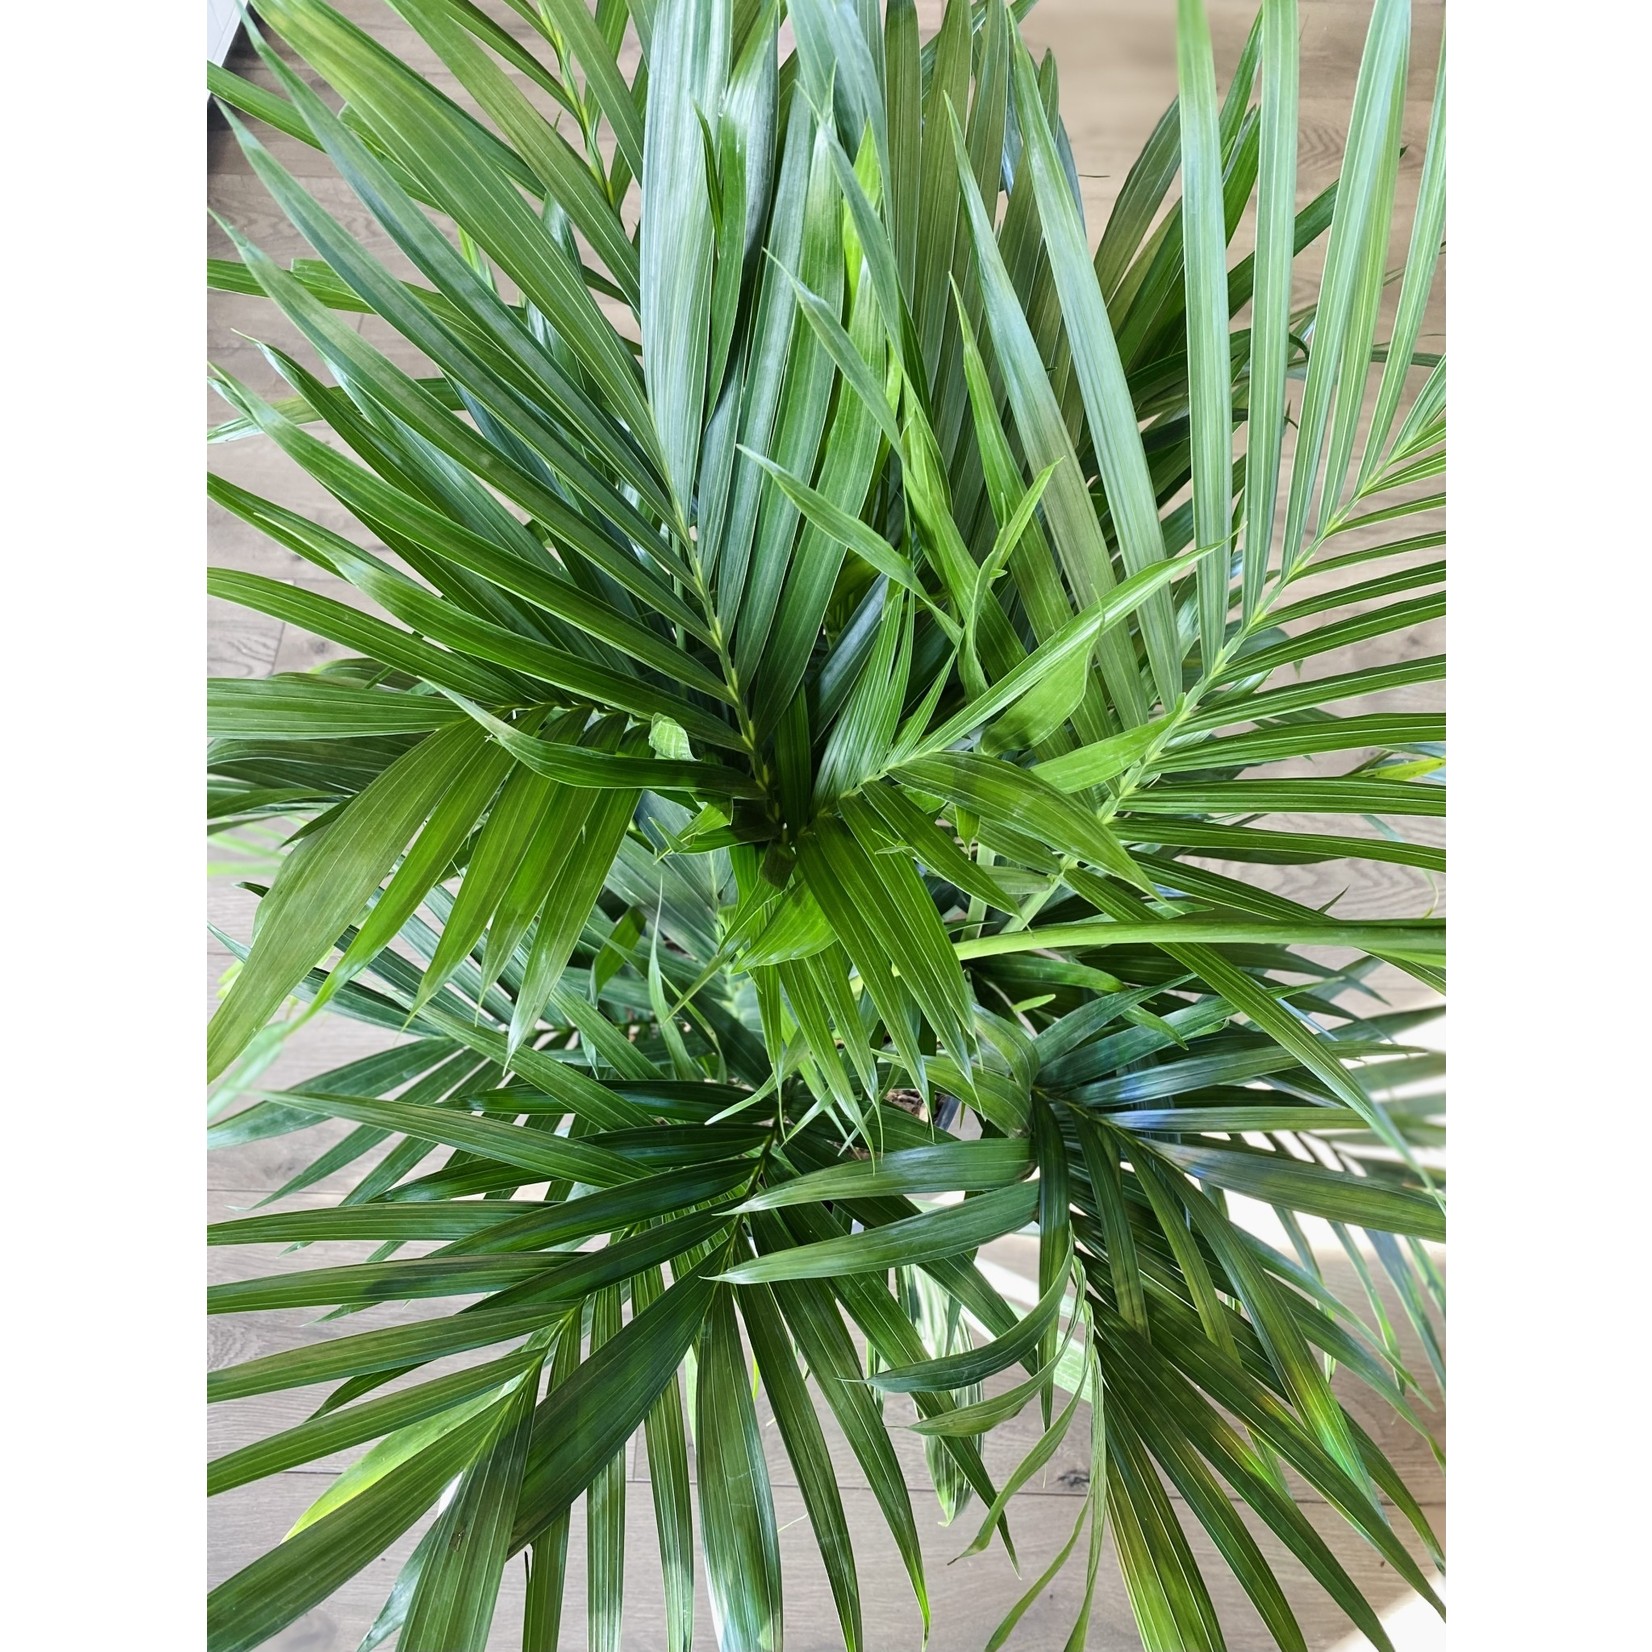 Chamaedorea  cataractarum 'Cat Palm'